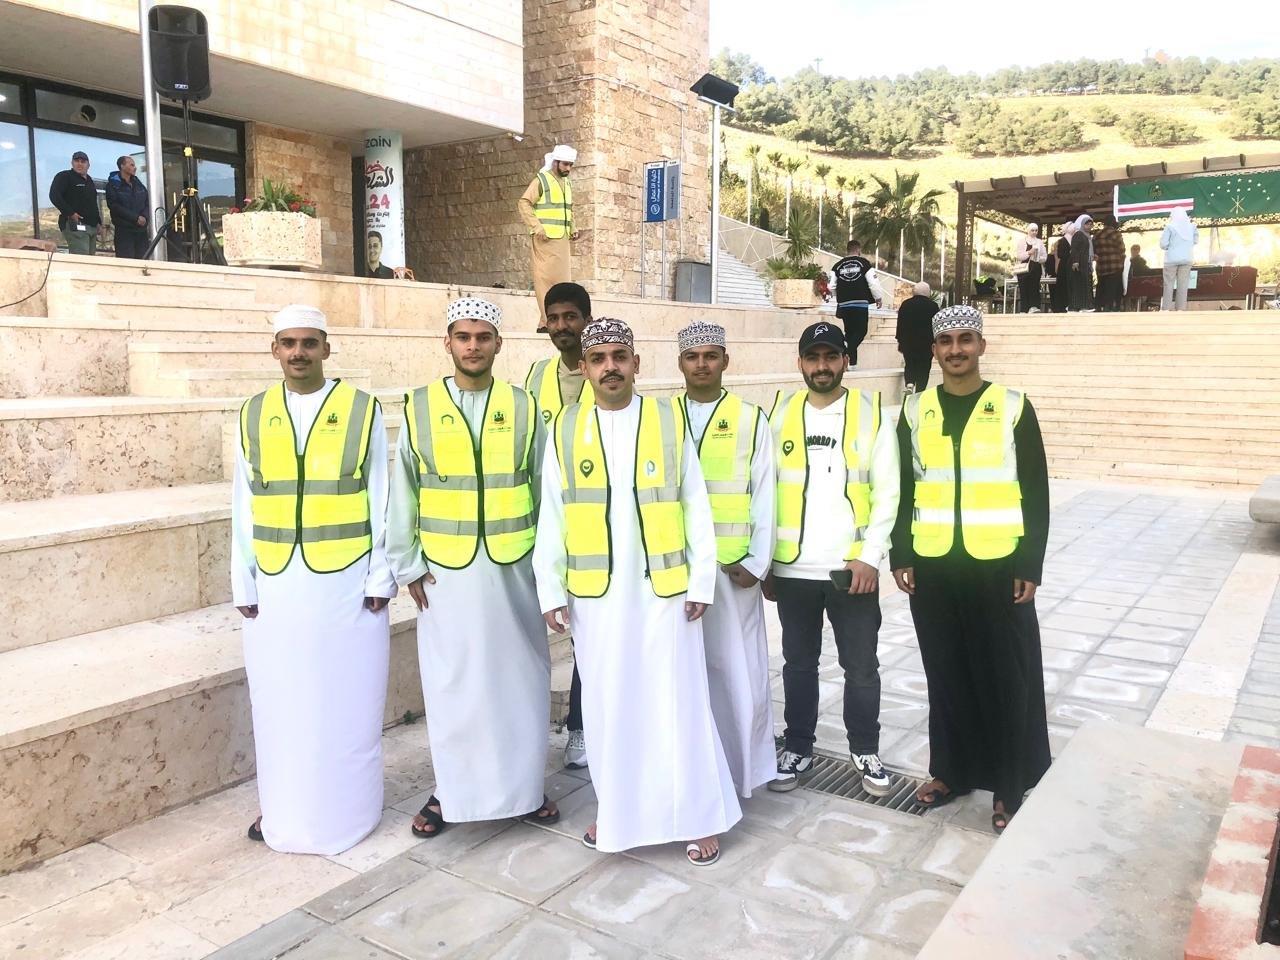 بحضور متصرف لواء عين الباشا تربوية "عمان العربية" تقيم إفطاراً خيرياً للطلبة الايتام وذوي الاحتياجات الخاصة5